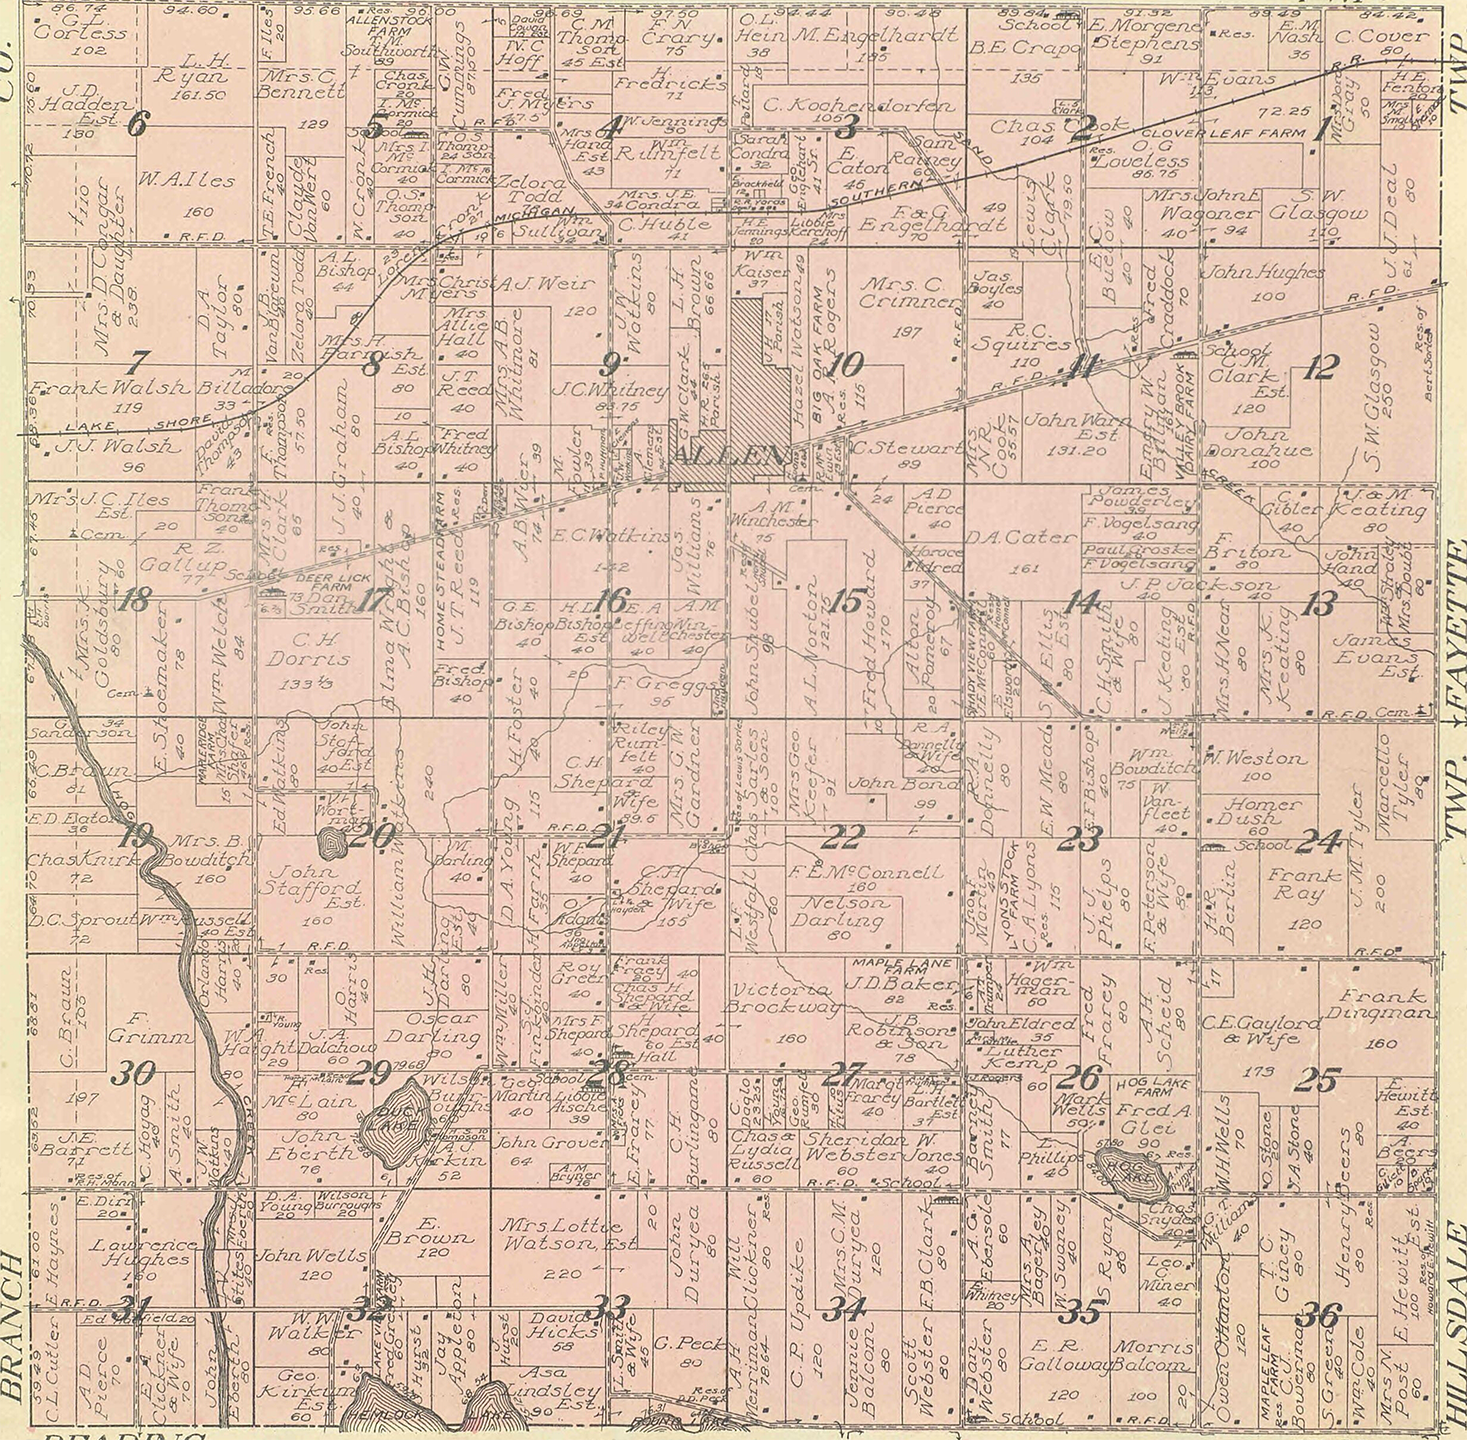 1916 Allen Township, Michigan landownership map